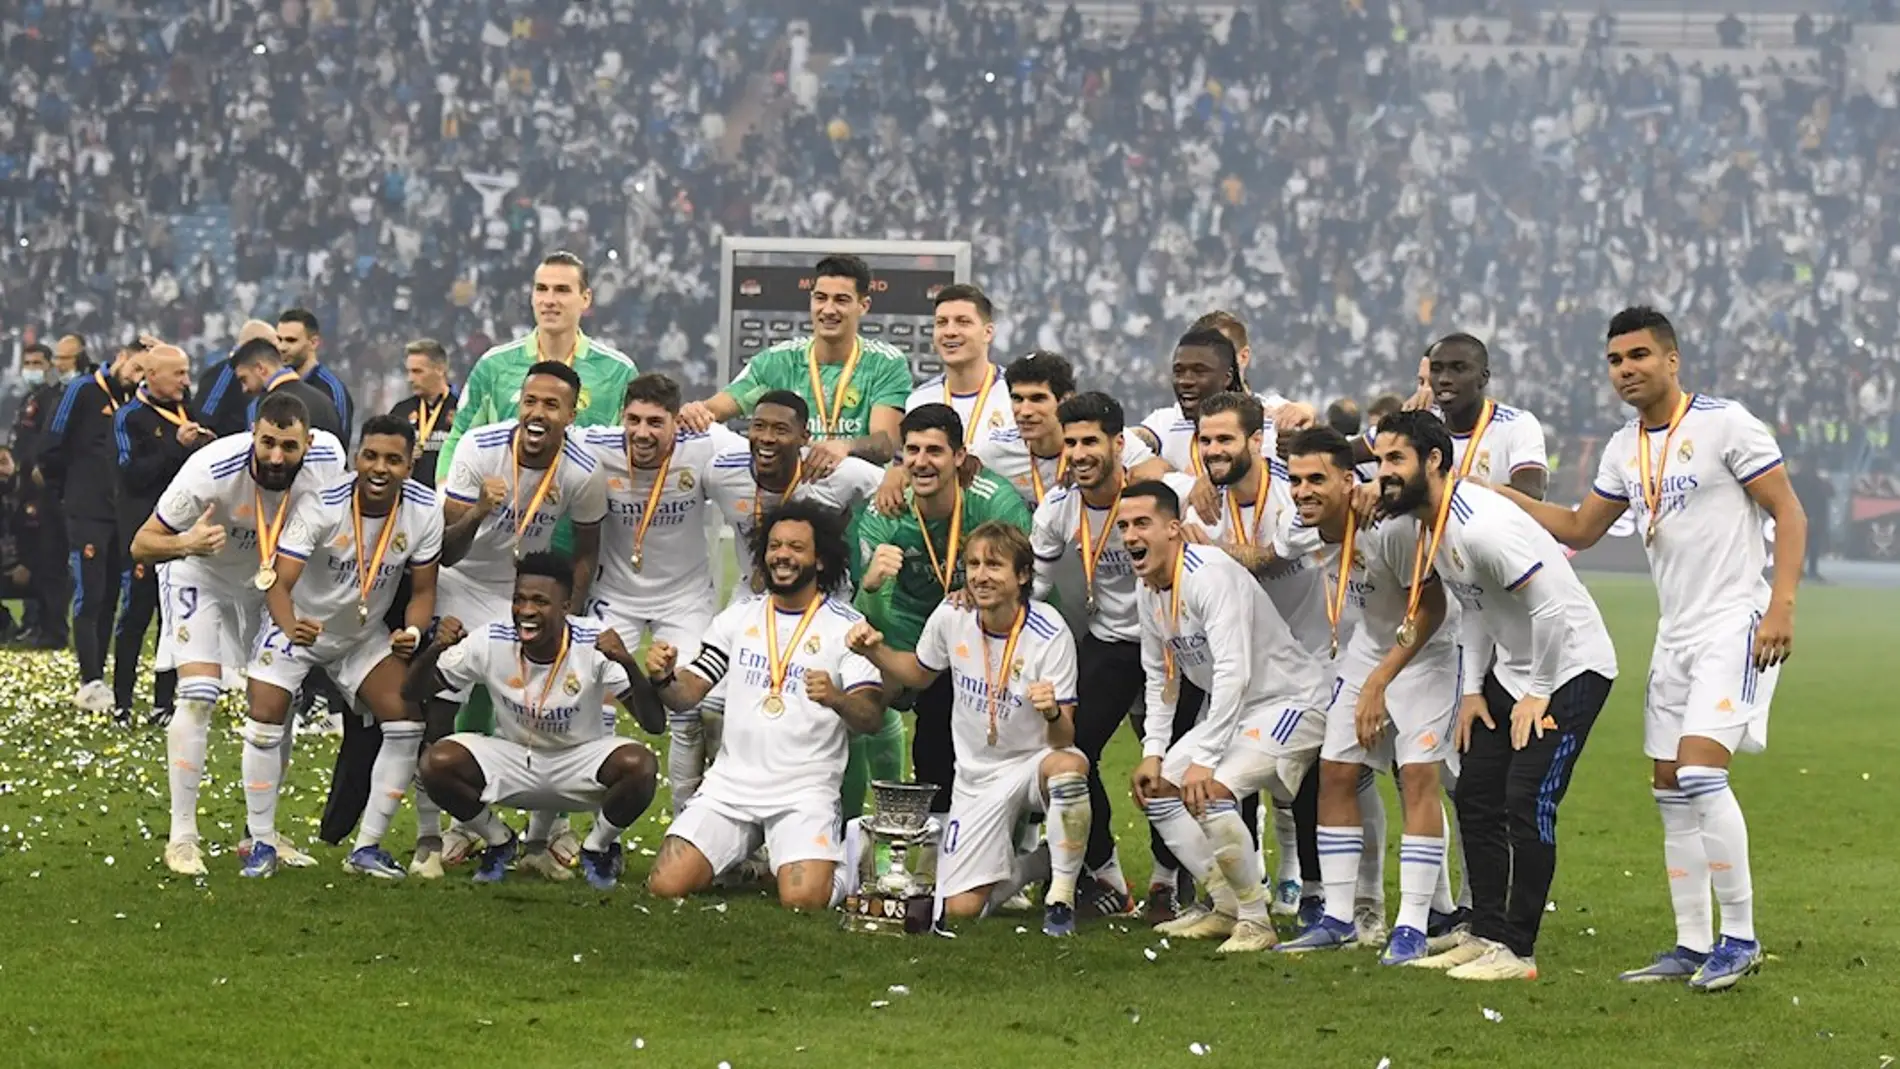 Qué primas recibirán los jugadores del Real Madrid por ser campeones Liga? | Cero